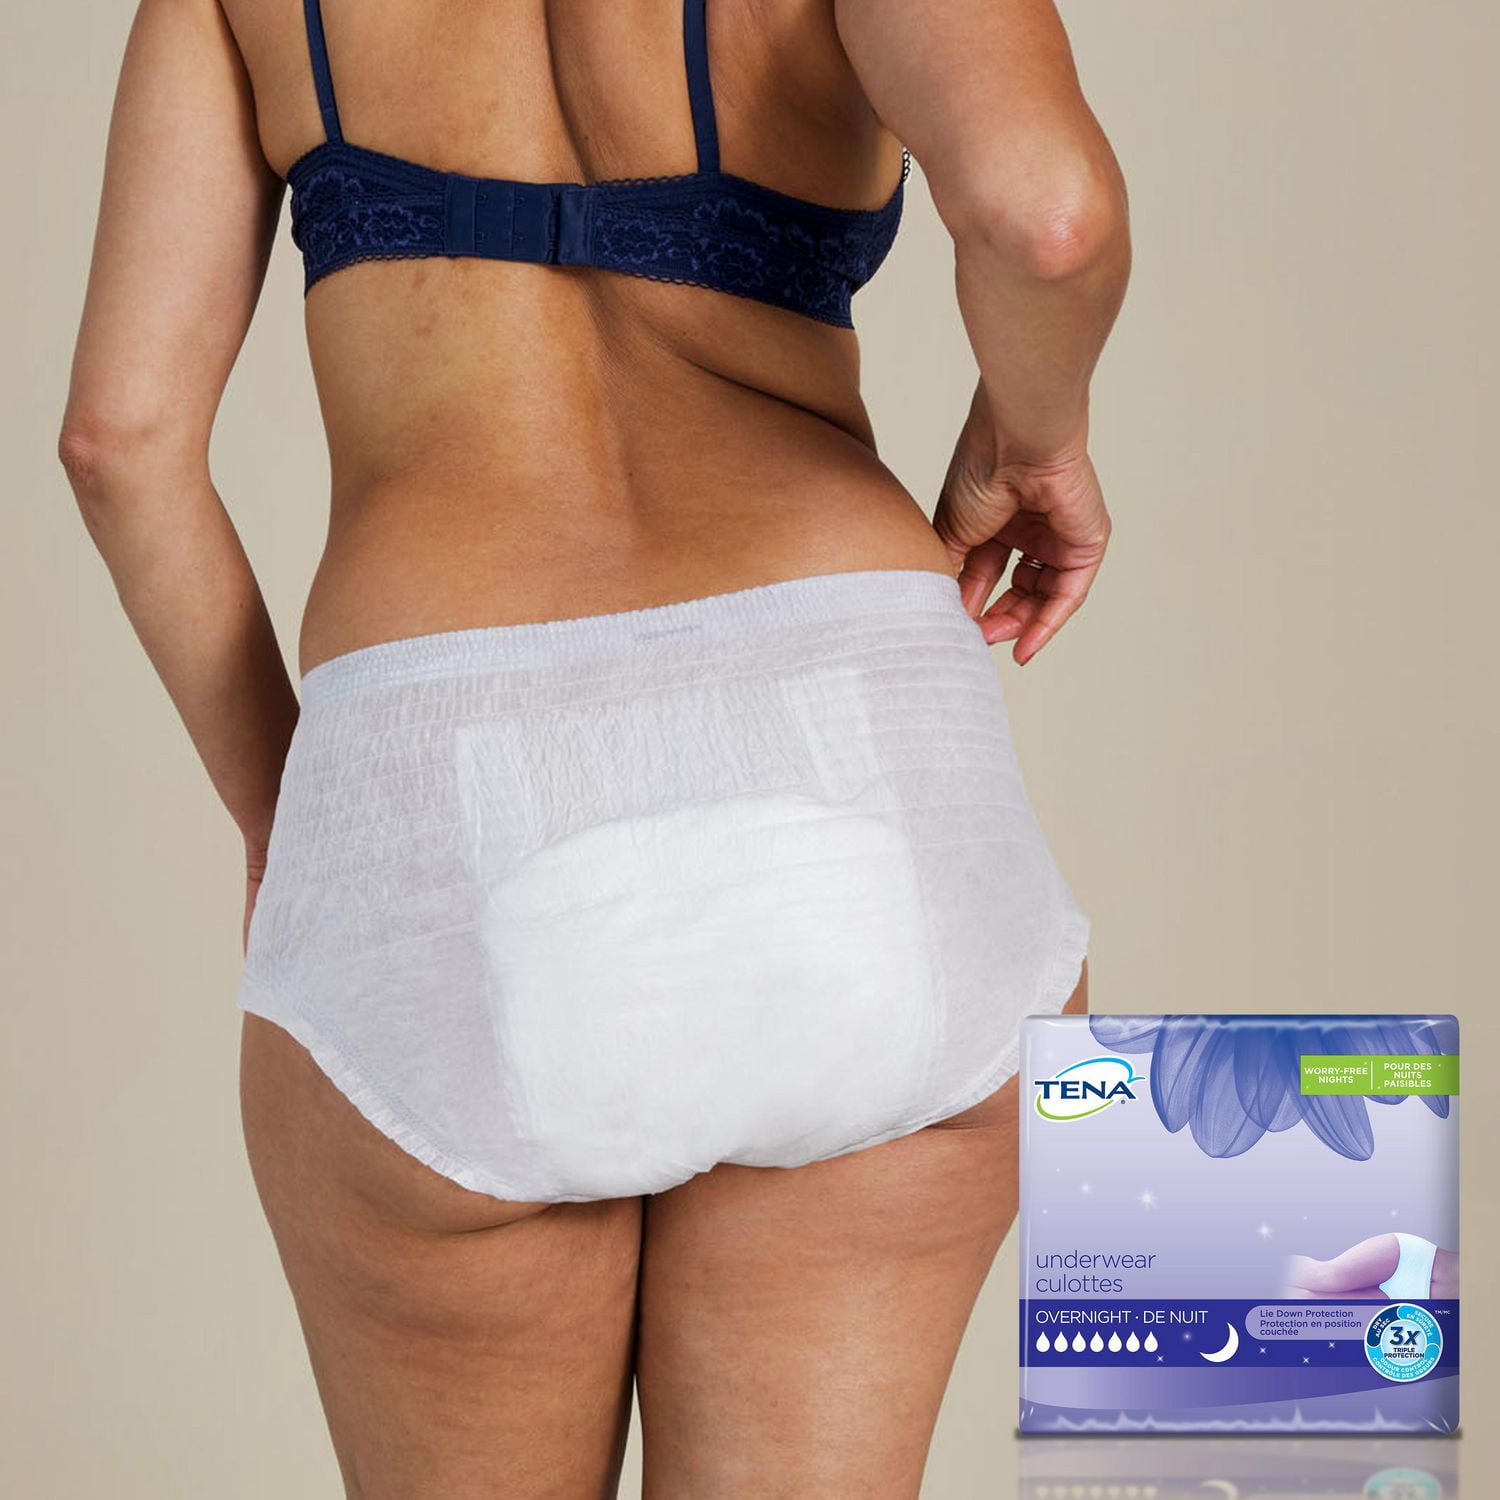 Procare protective underwear, Medium. $25 per box, 8 boxes in